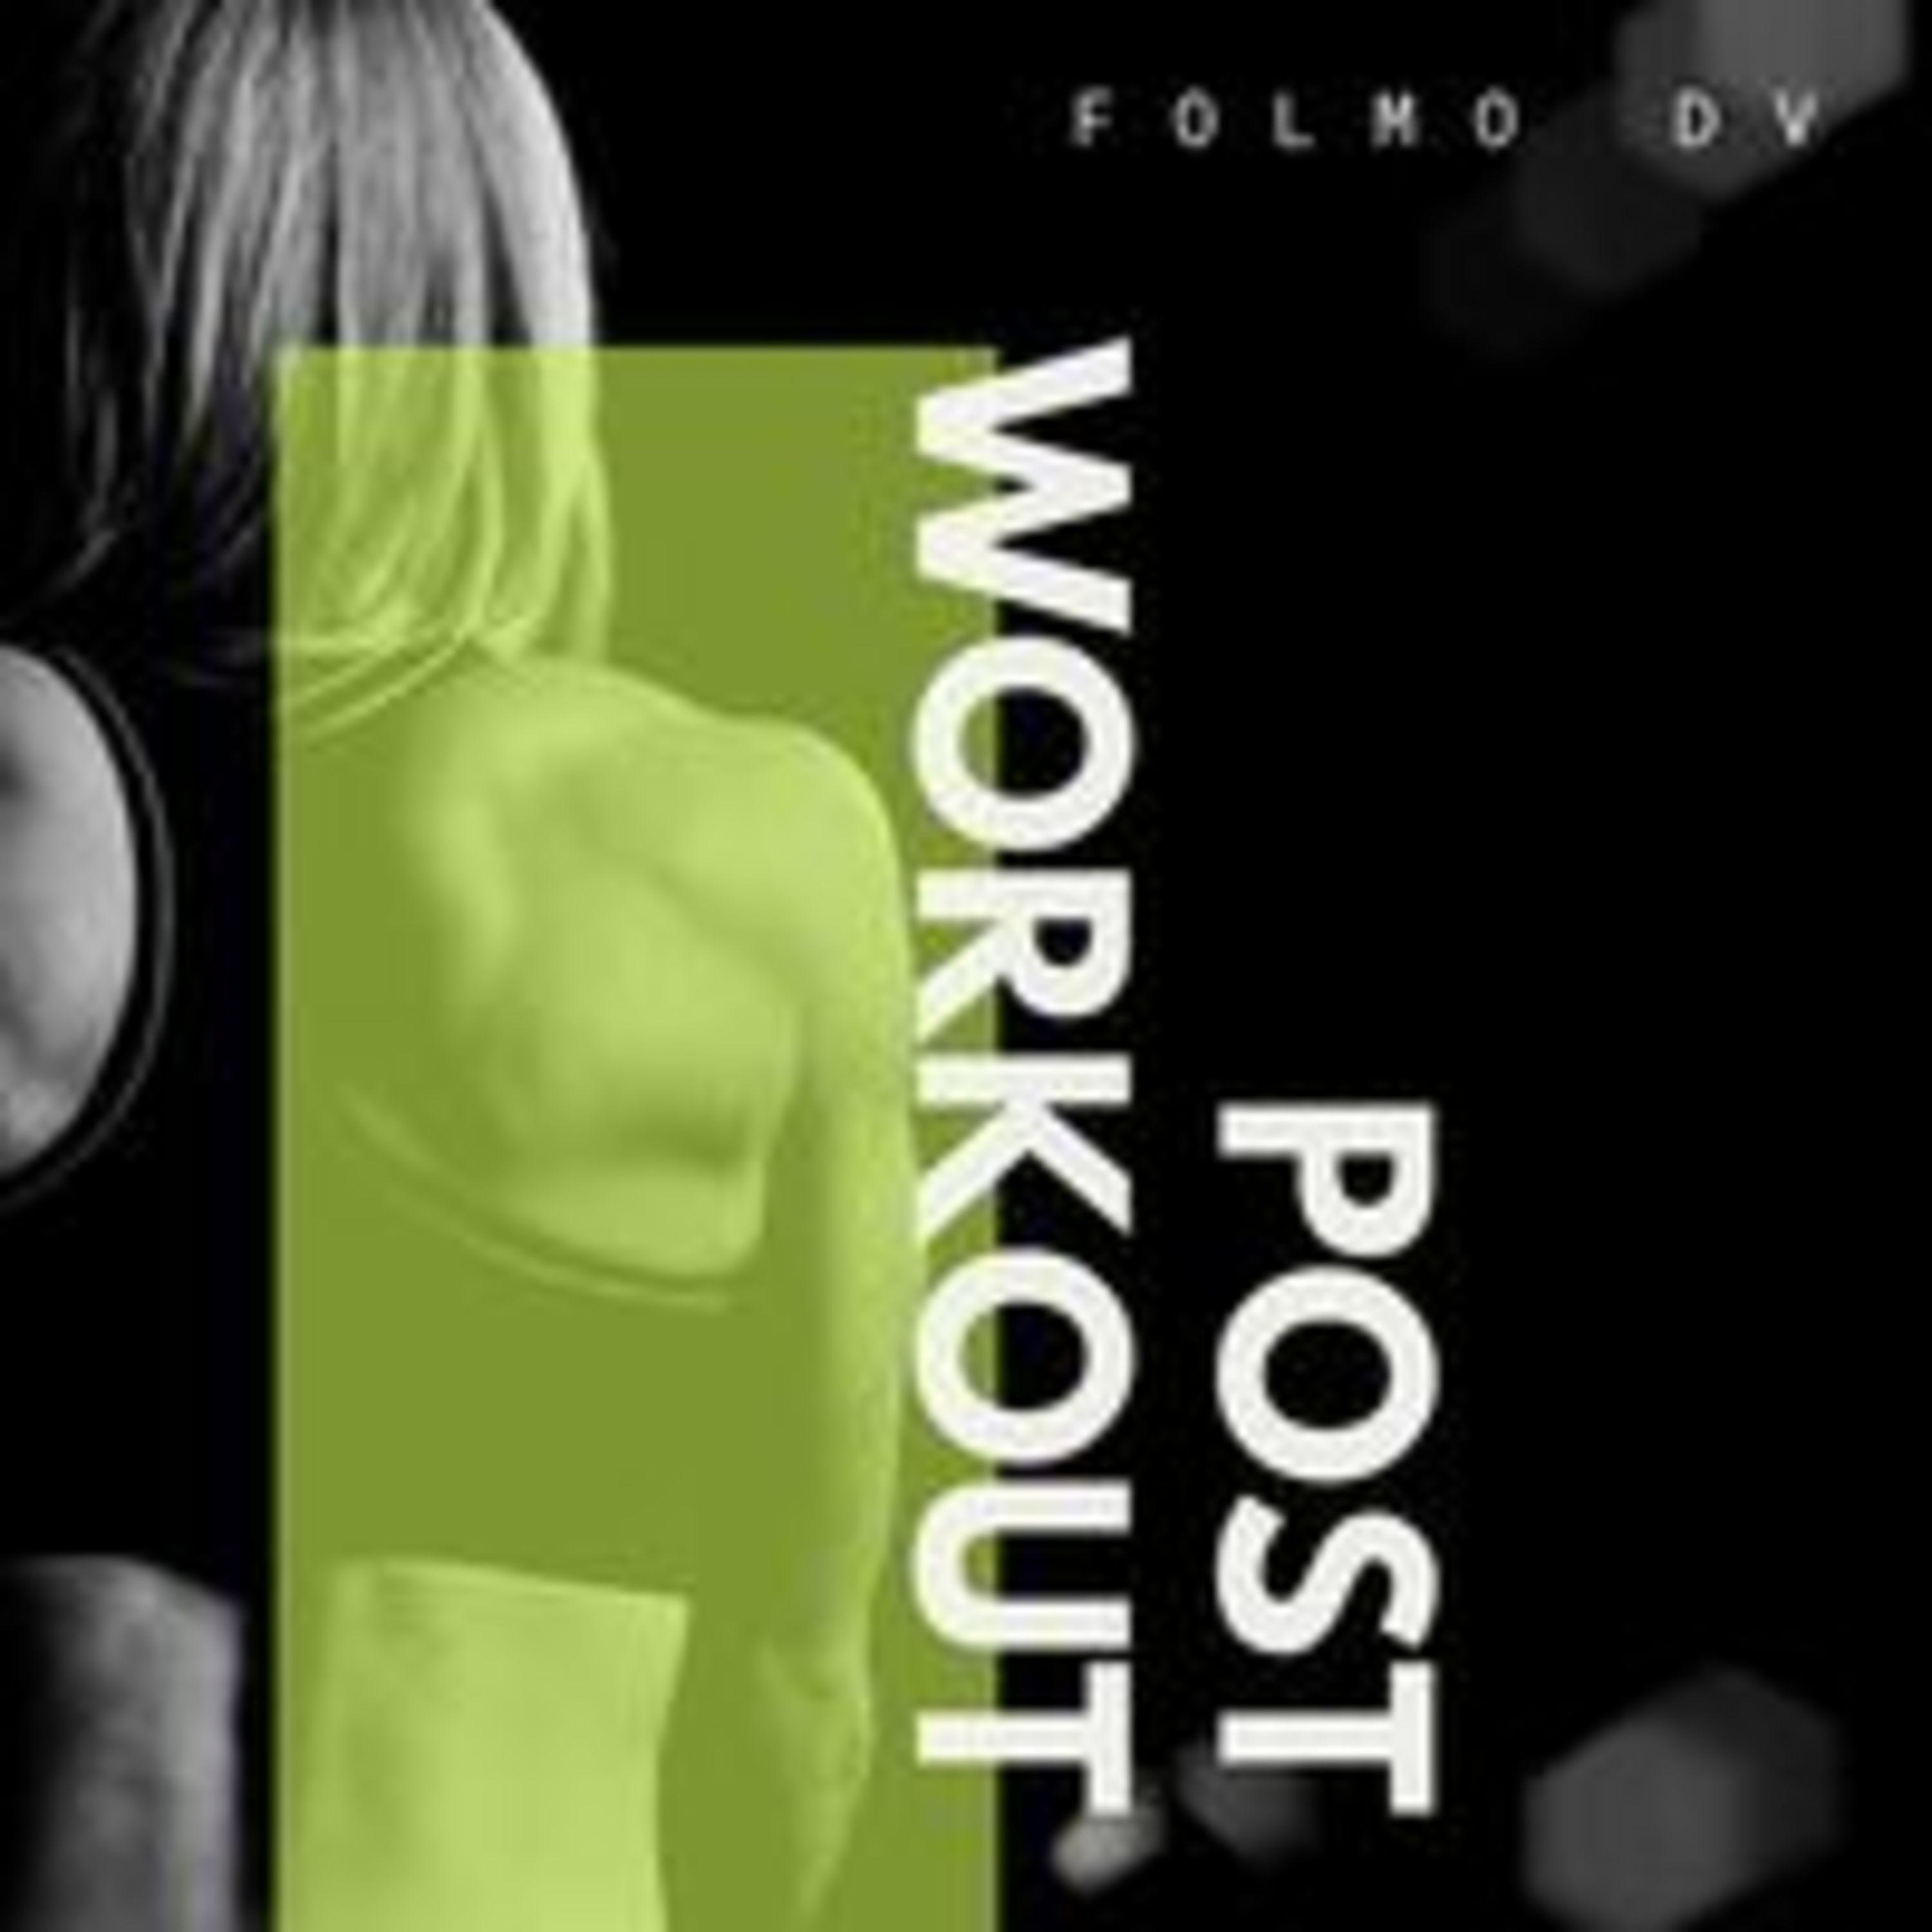 Folmo DV - Post Workout